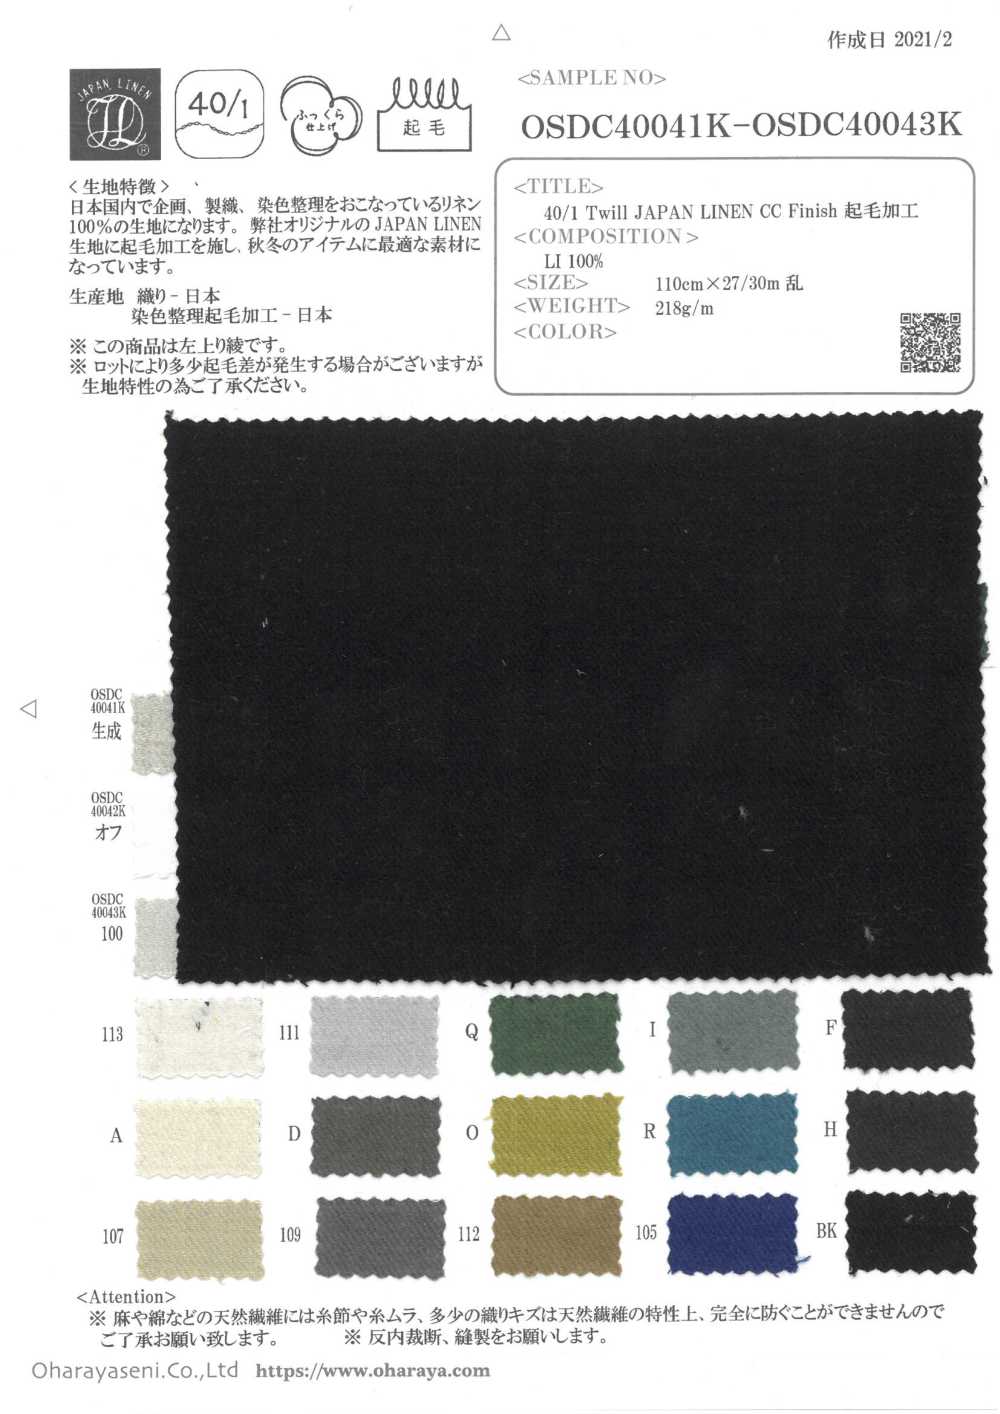 OSDC40043K 40/1 Twill JAPAN LINEN CC Finish Fuzzy Finish[Textile / Fabric] Oharayaseni